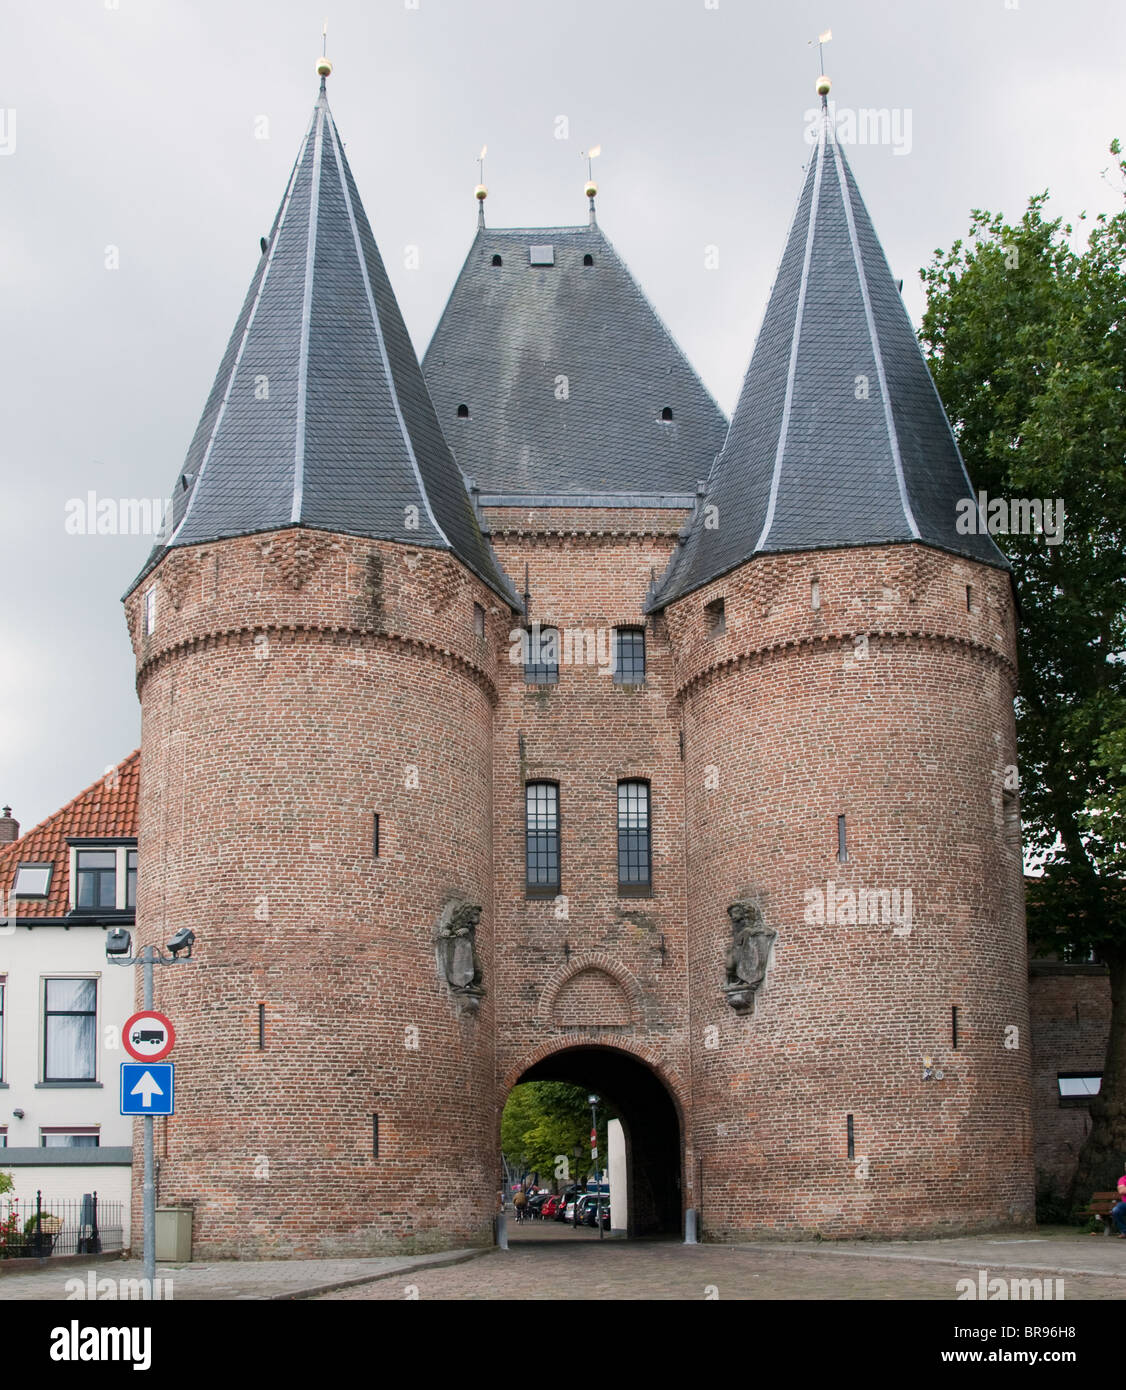 Kampen Overijssel Netherlands town city historic Stock Photo